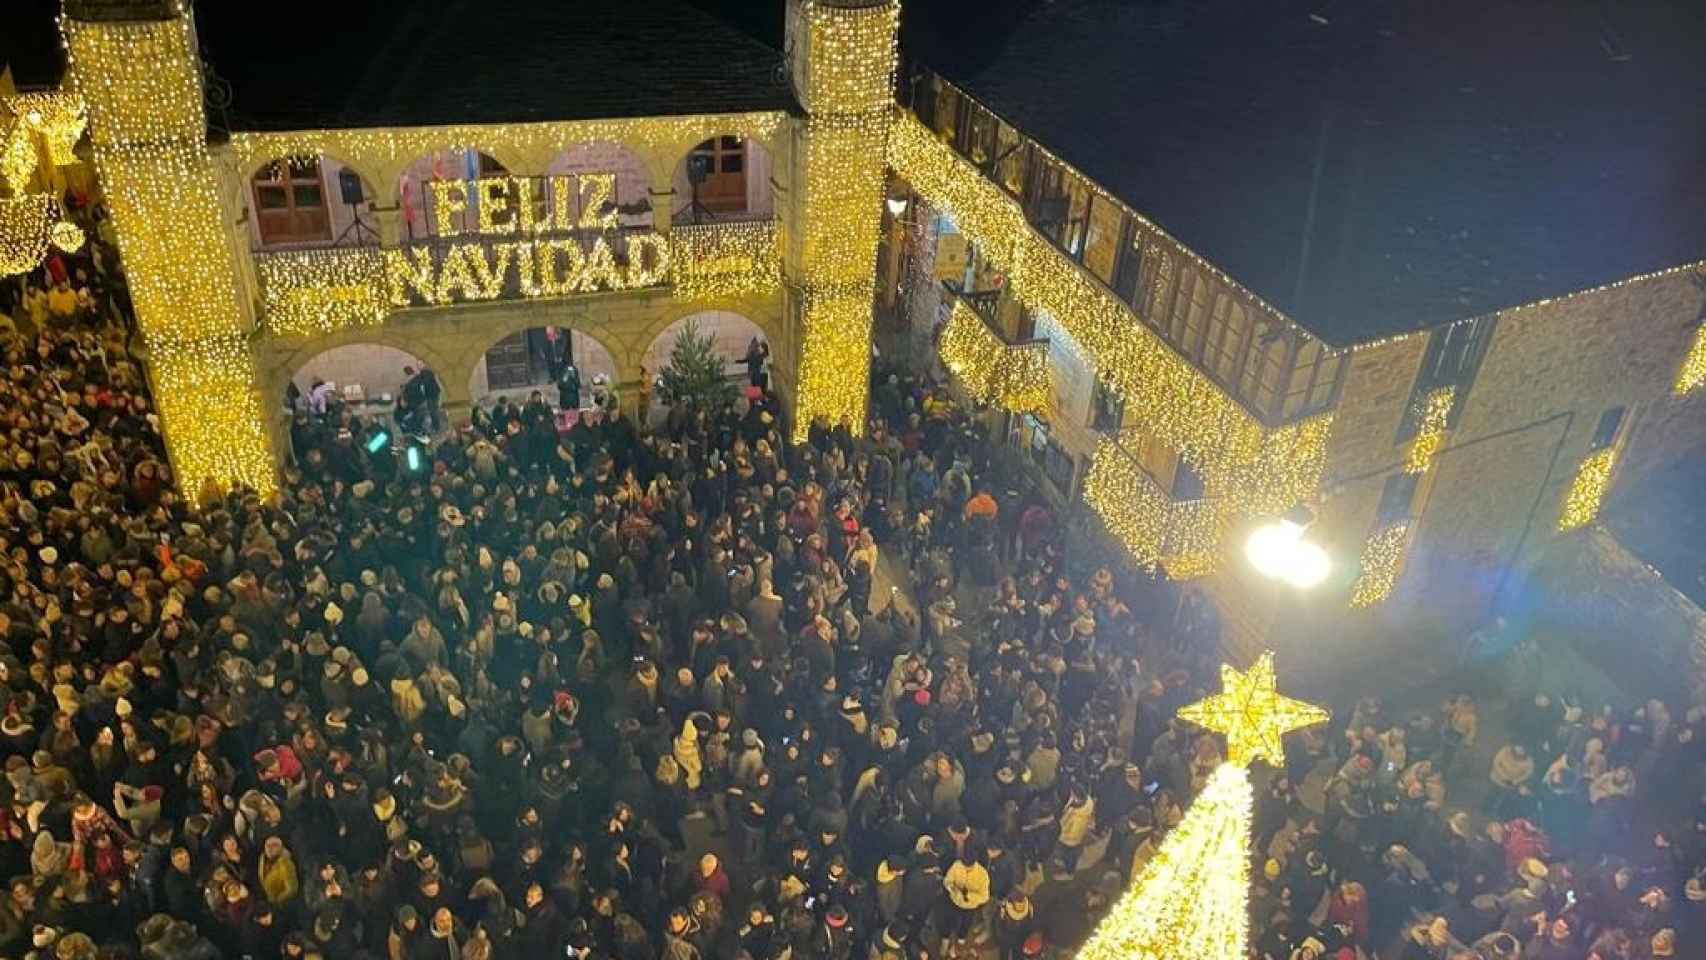 Encendido navideño en Puebla de Sanabria